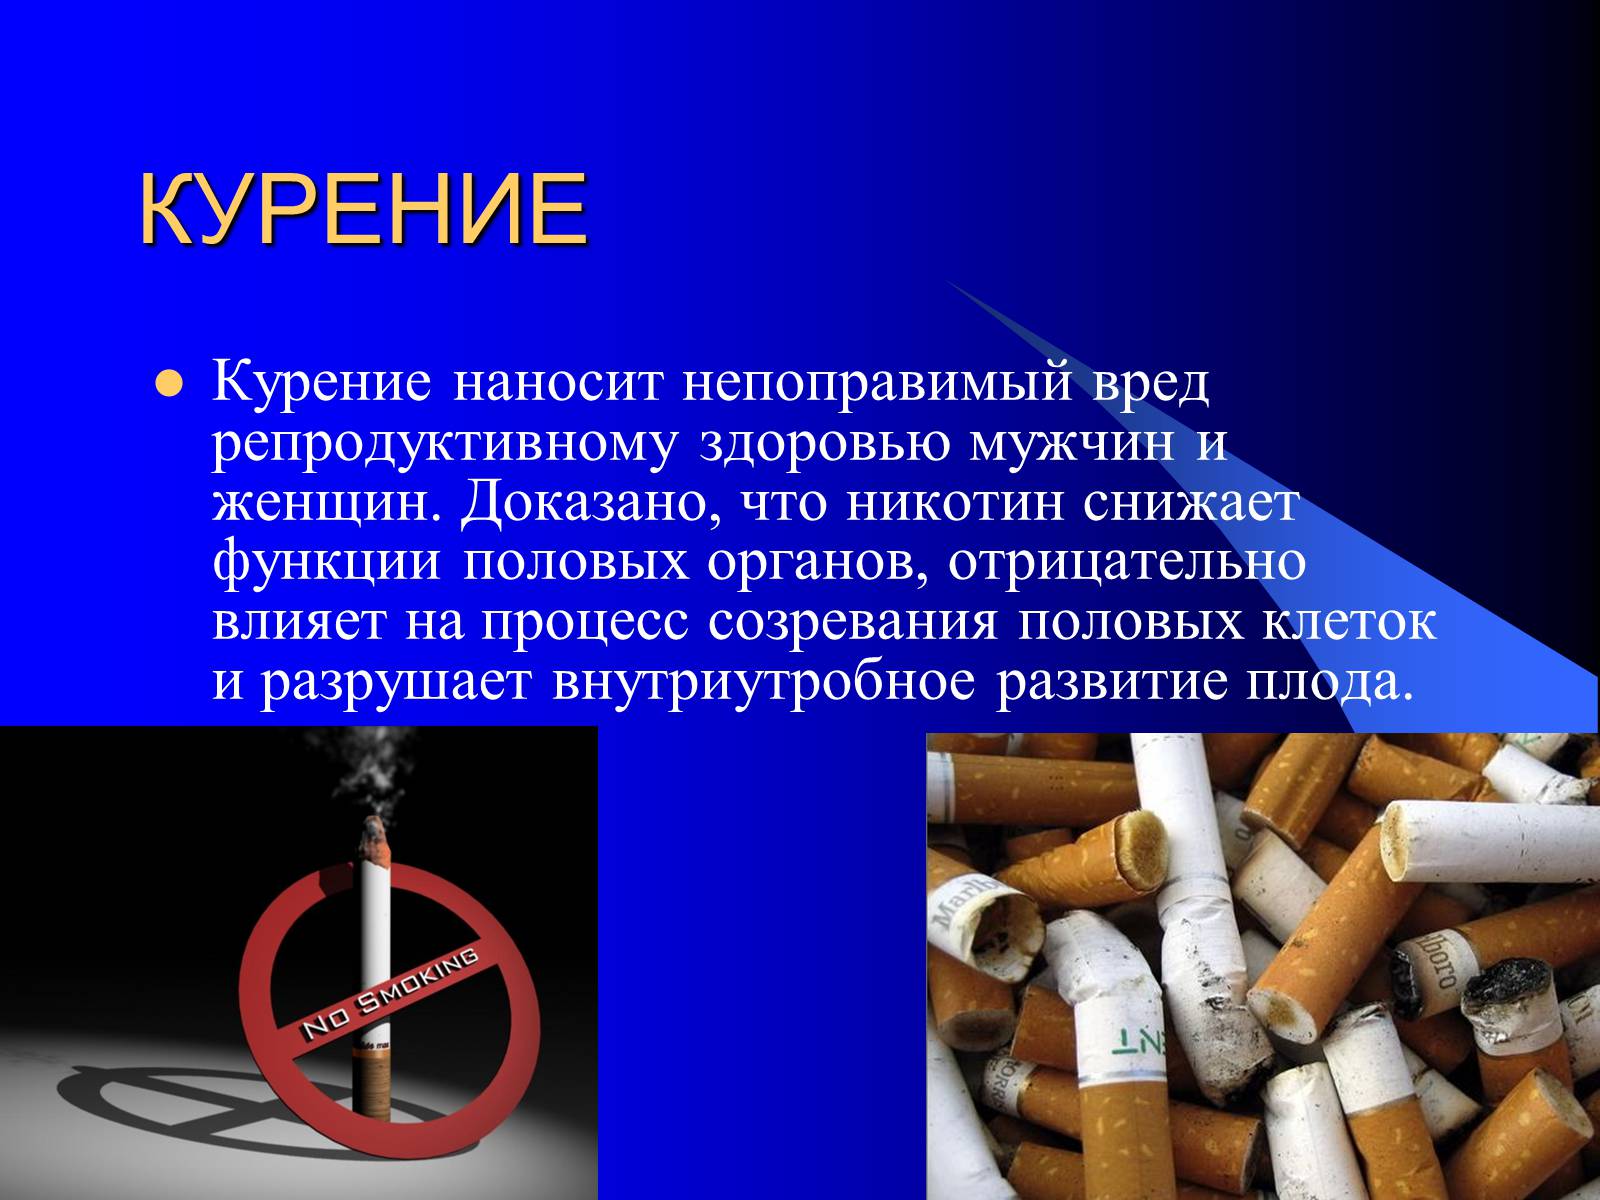 Как влияет курение на мужчин. Влияние вредных привычек на организм. Влияние табакокурения на репродуктивное здоровье. Влияние курения на репродуктивную систему человека. Влияние табакокурения на репродуктивную систему.